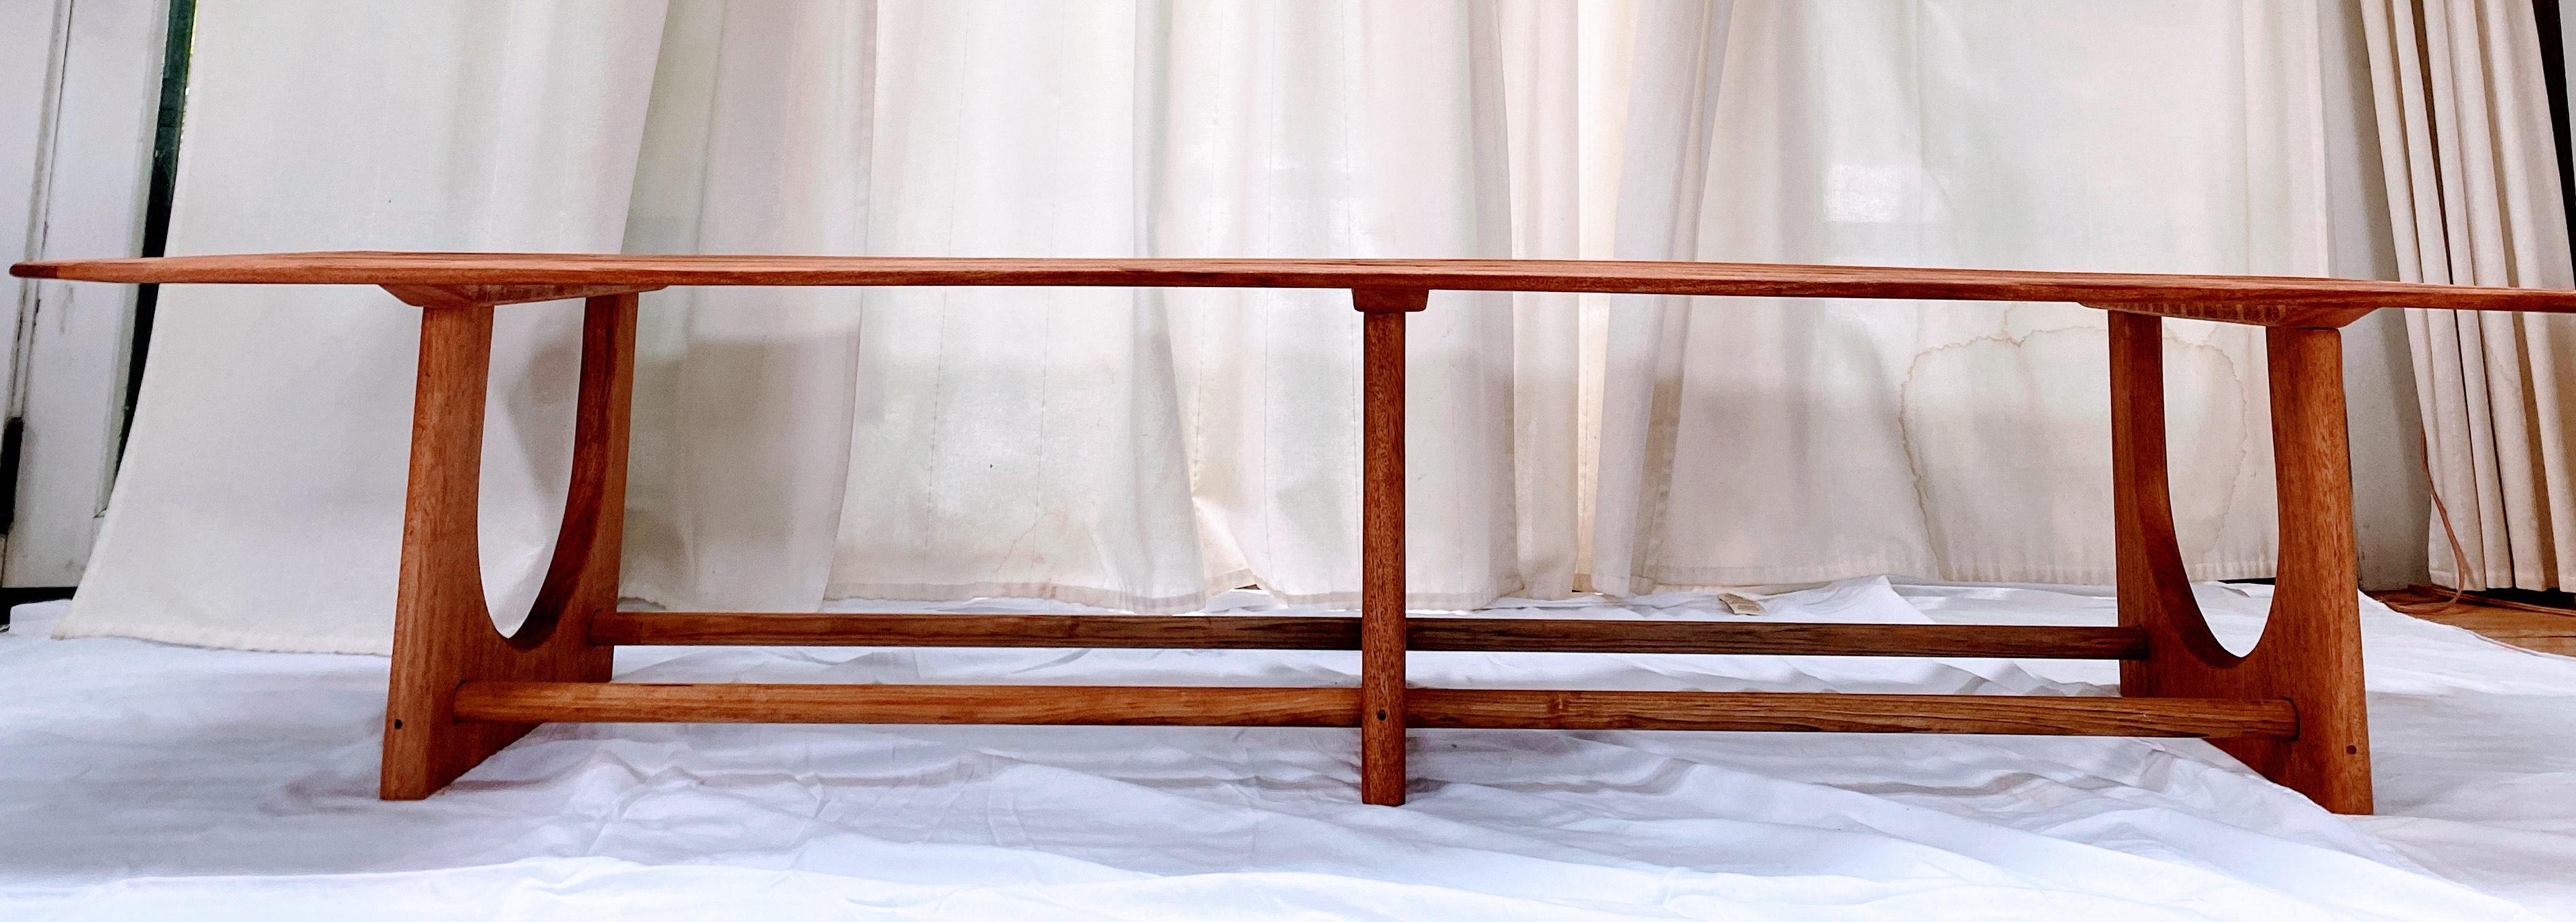 Cette table basse (photo) est fabriquée en acajou et huilée avec une huile de teck claire et chauffée. La table peut être construite en teck, en acajou ou simplement teintée/peinte à partir de bois de PT. Bien que conçue pour l'extérieur, cette